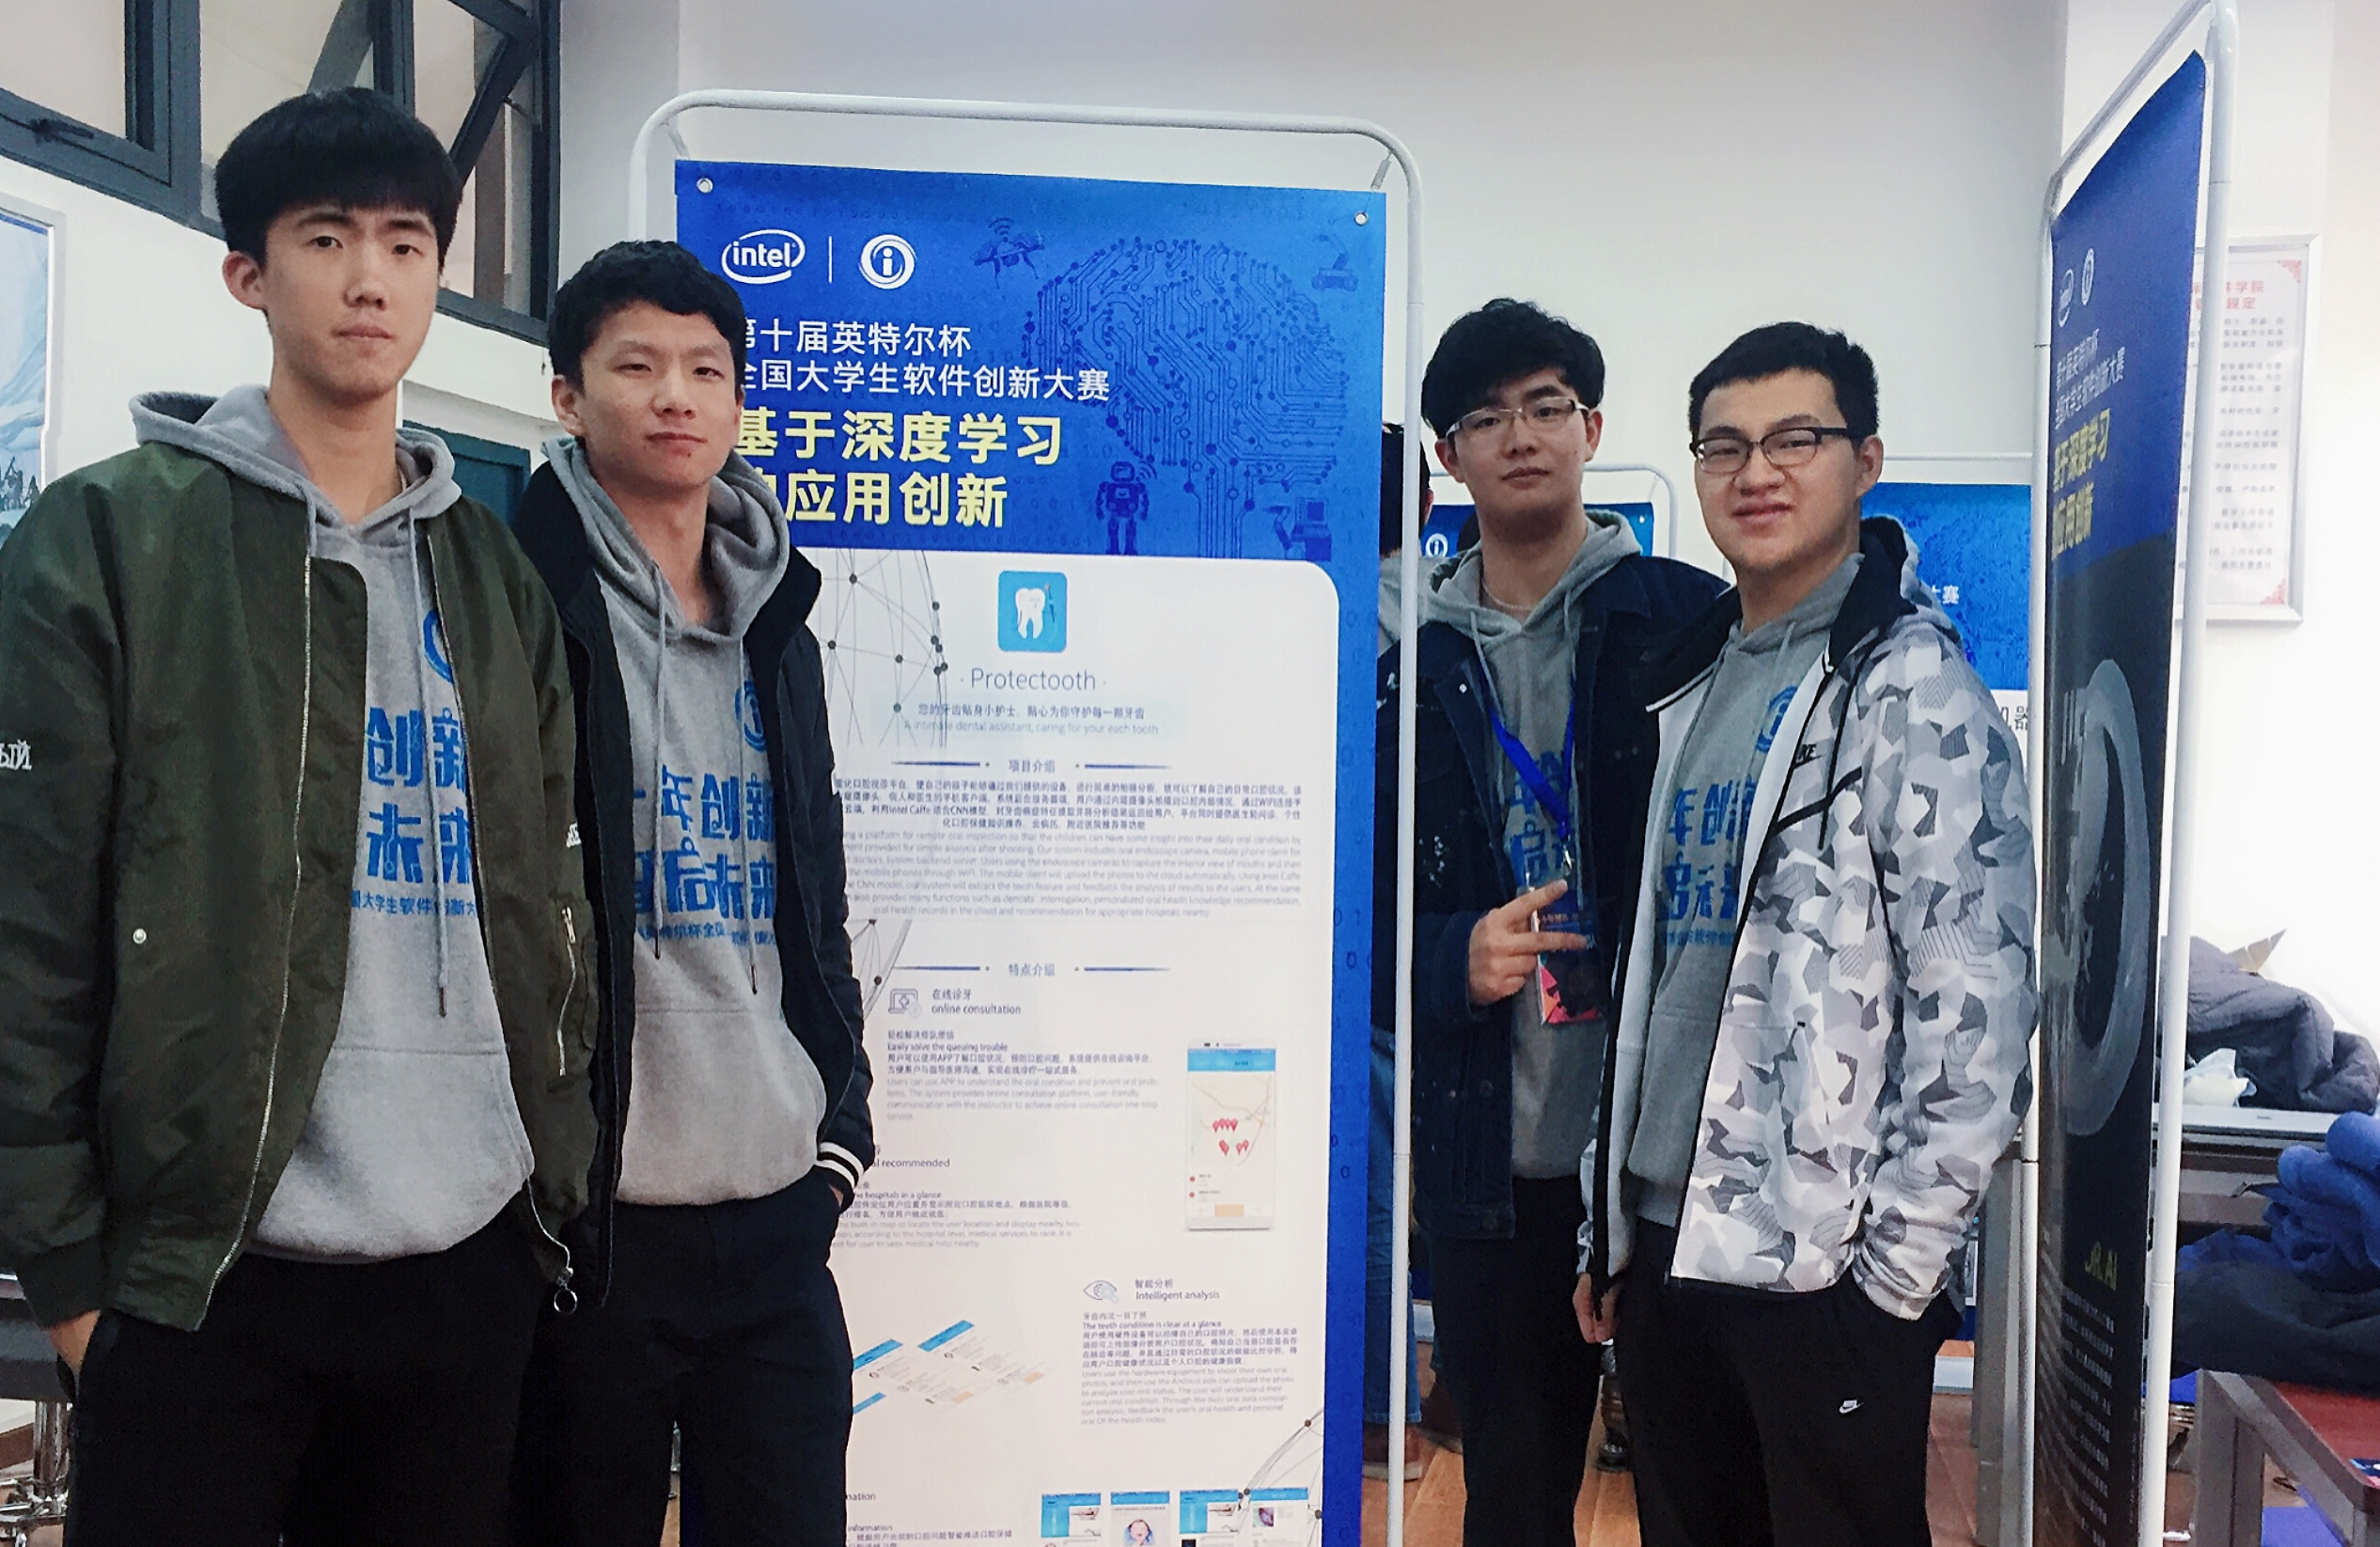 胡恒昌同学带领团队参加英特尔杯软件创新大赛